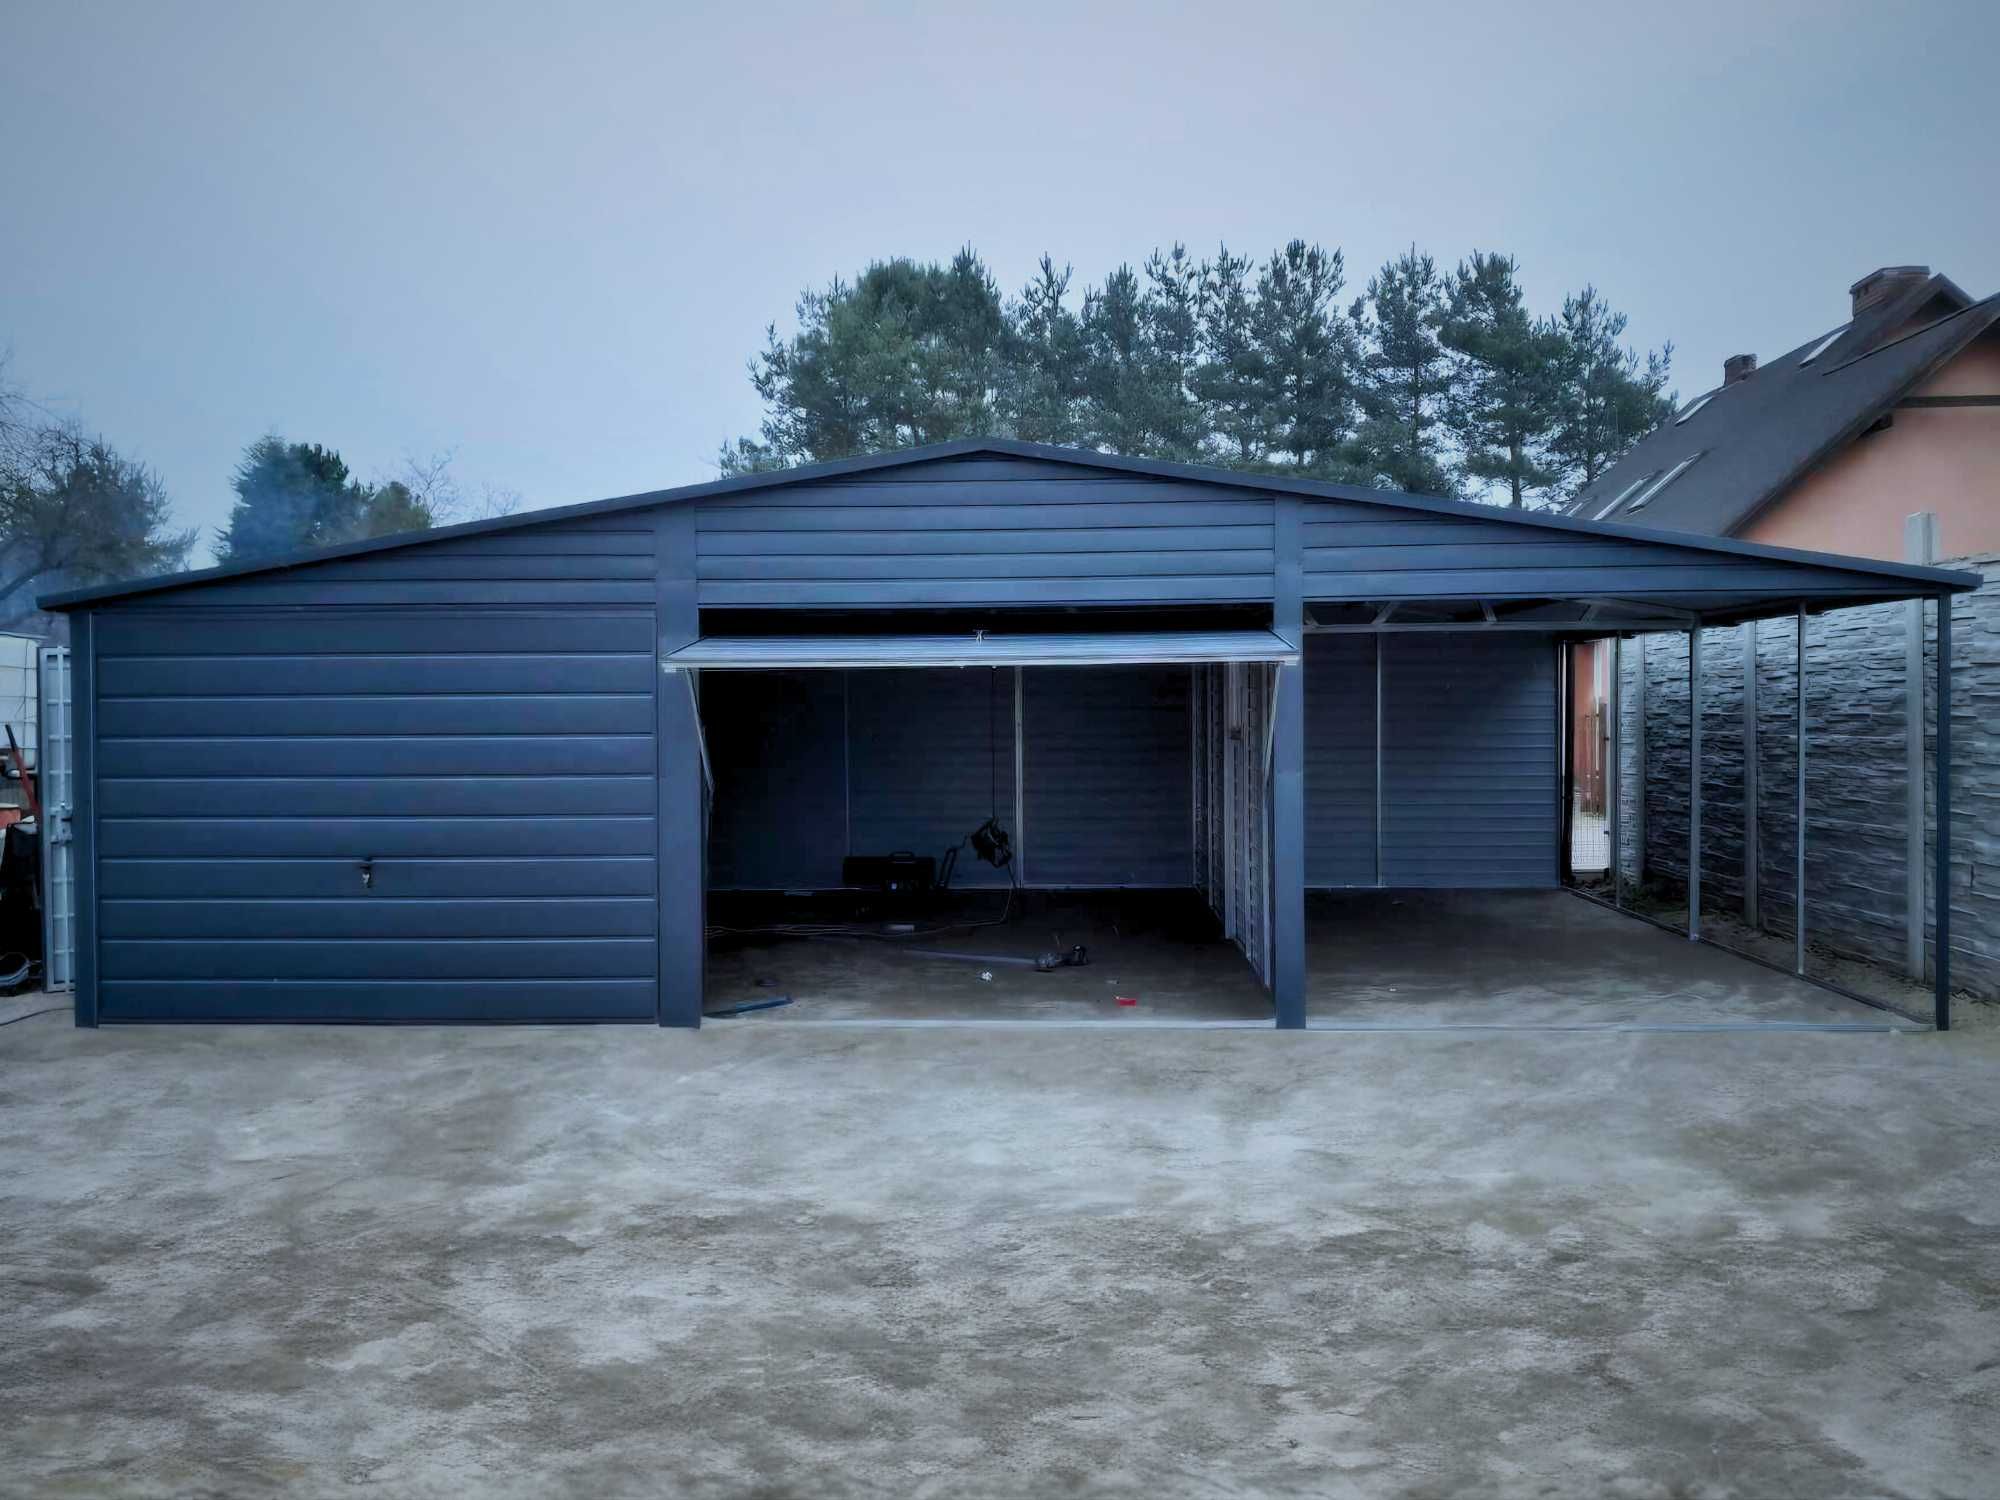 Garaż dwustanowiskowy grafit garaz 9x5m (garaz 7x6 8x8 9x9 10x5)